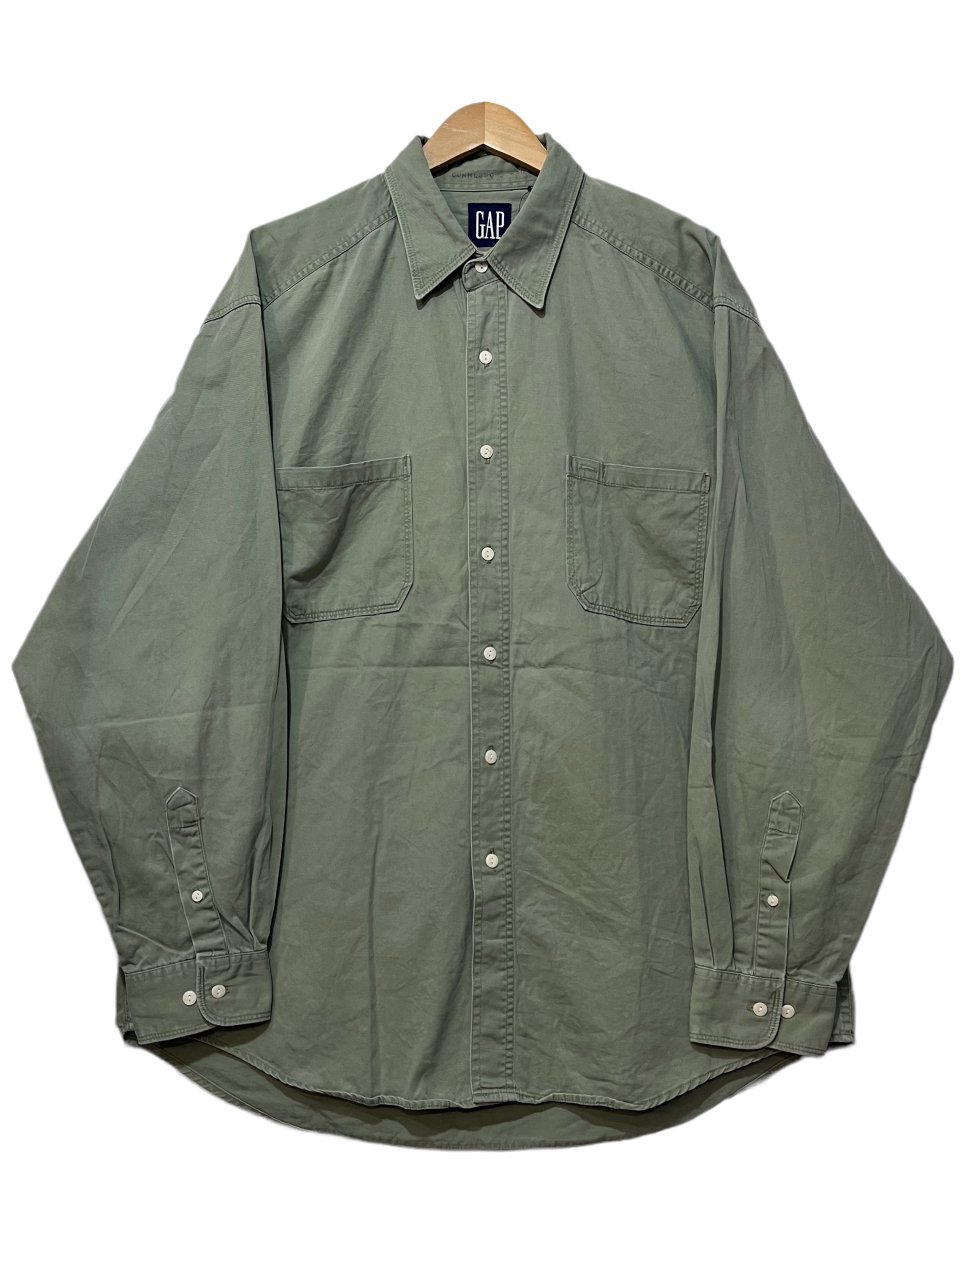 90s OLD GAP Cotton L/S Shirt オリーブ XL オールドギャップ 長袖 シャツ ワークシャツ コットン 無地 古着 -  NEWJOKE ONLINE STORE